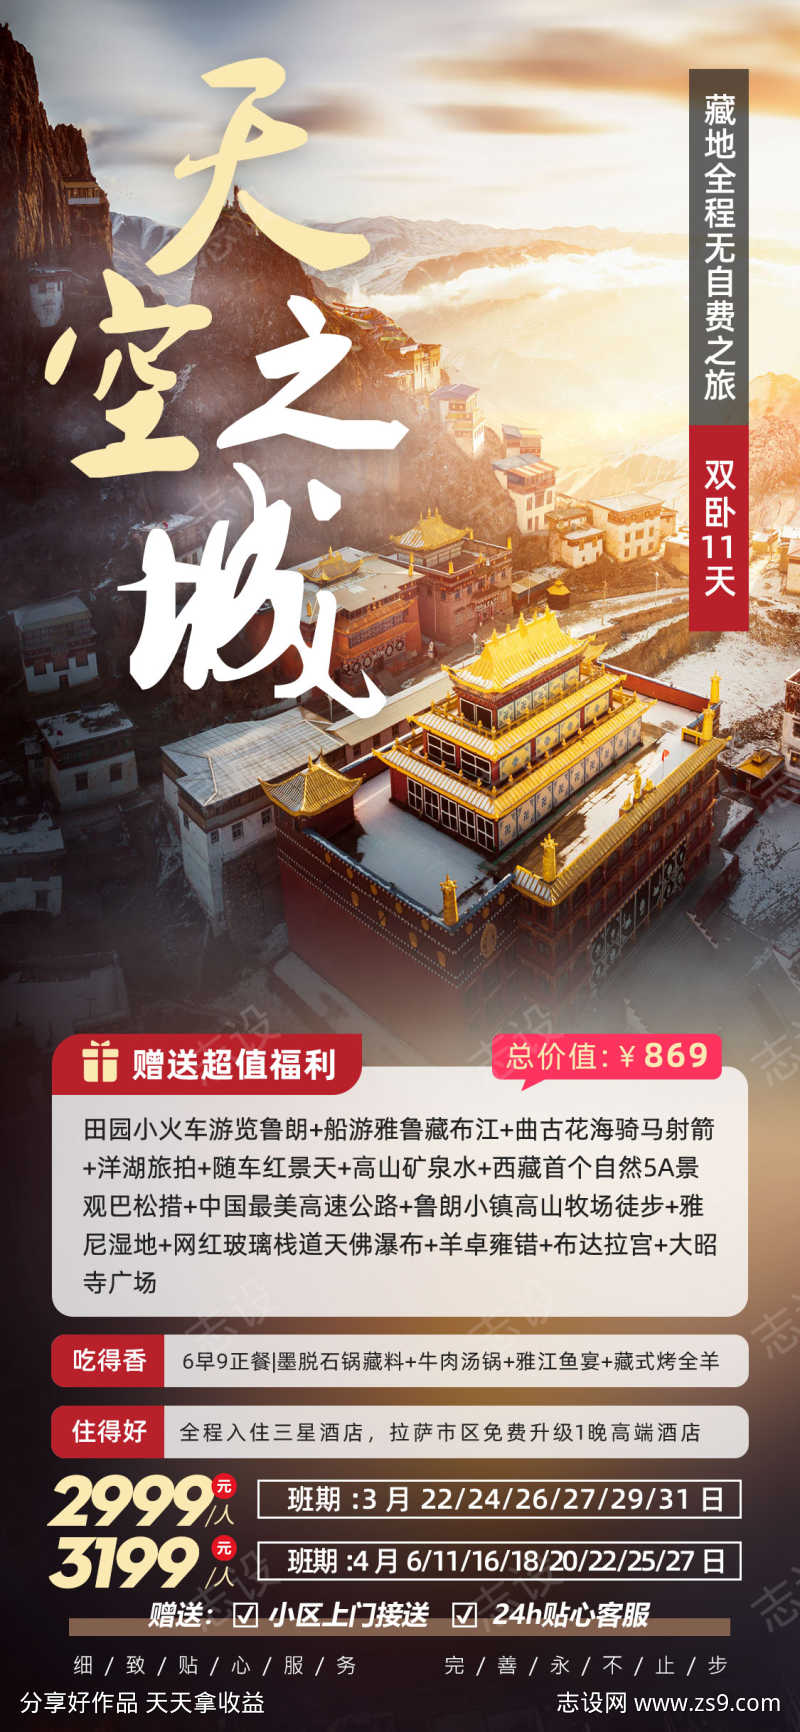 天空之城西藏旅游海报